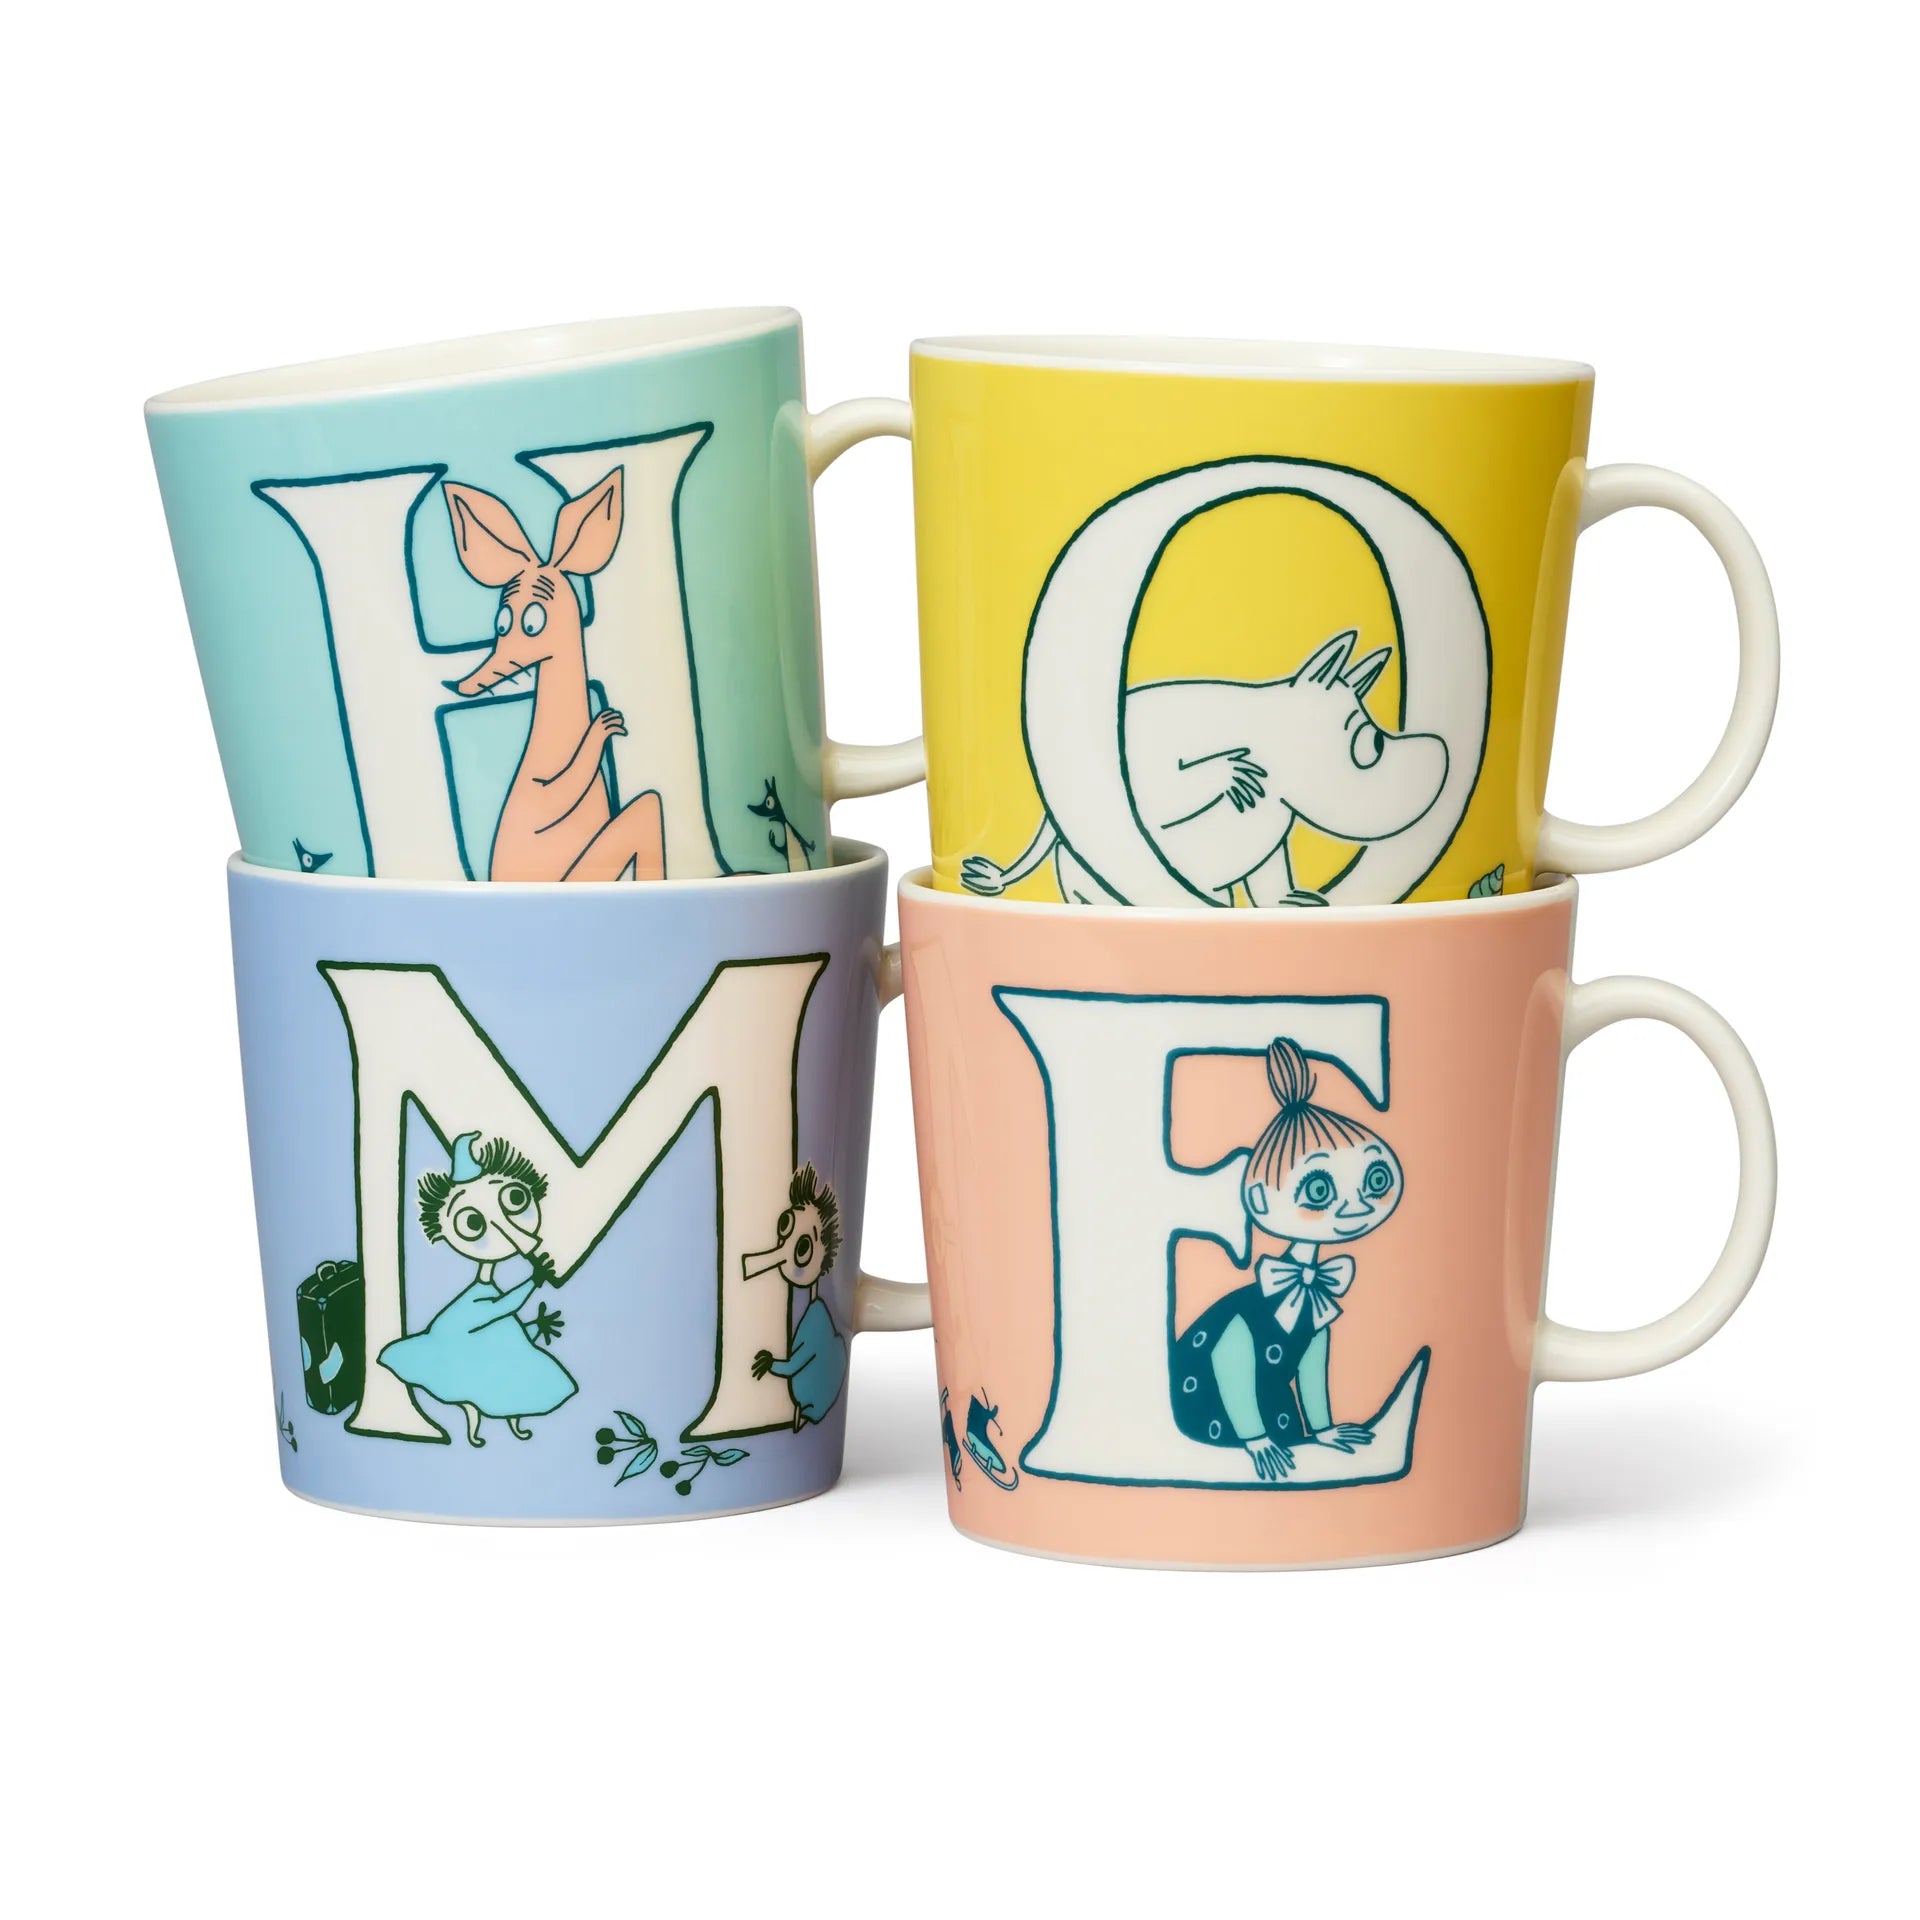 Moomin mug special LARGE 400ml ABC Moomin mug 40 cl V